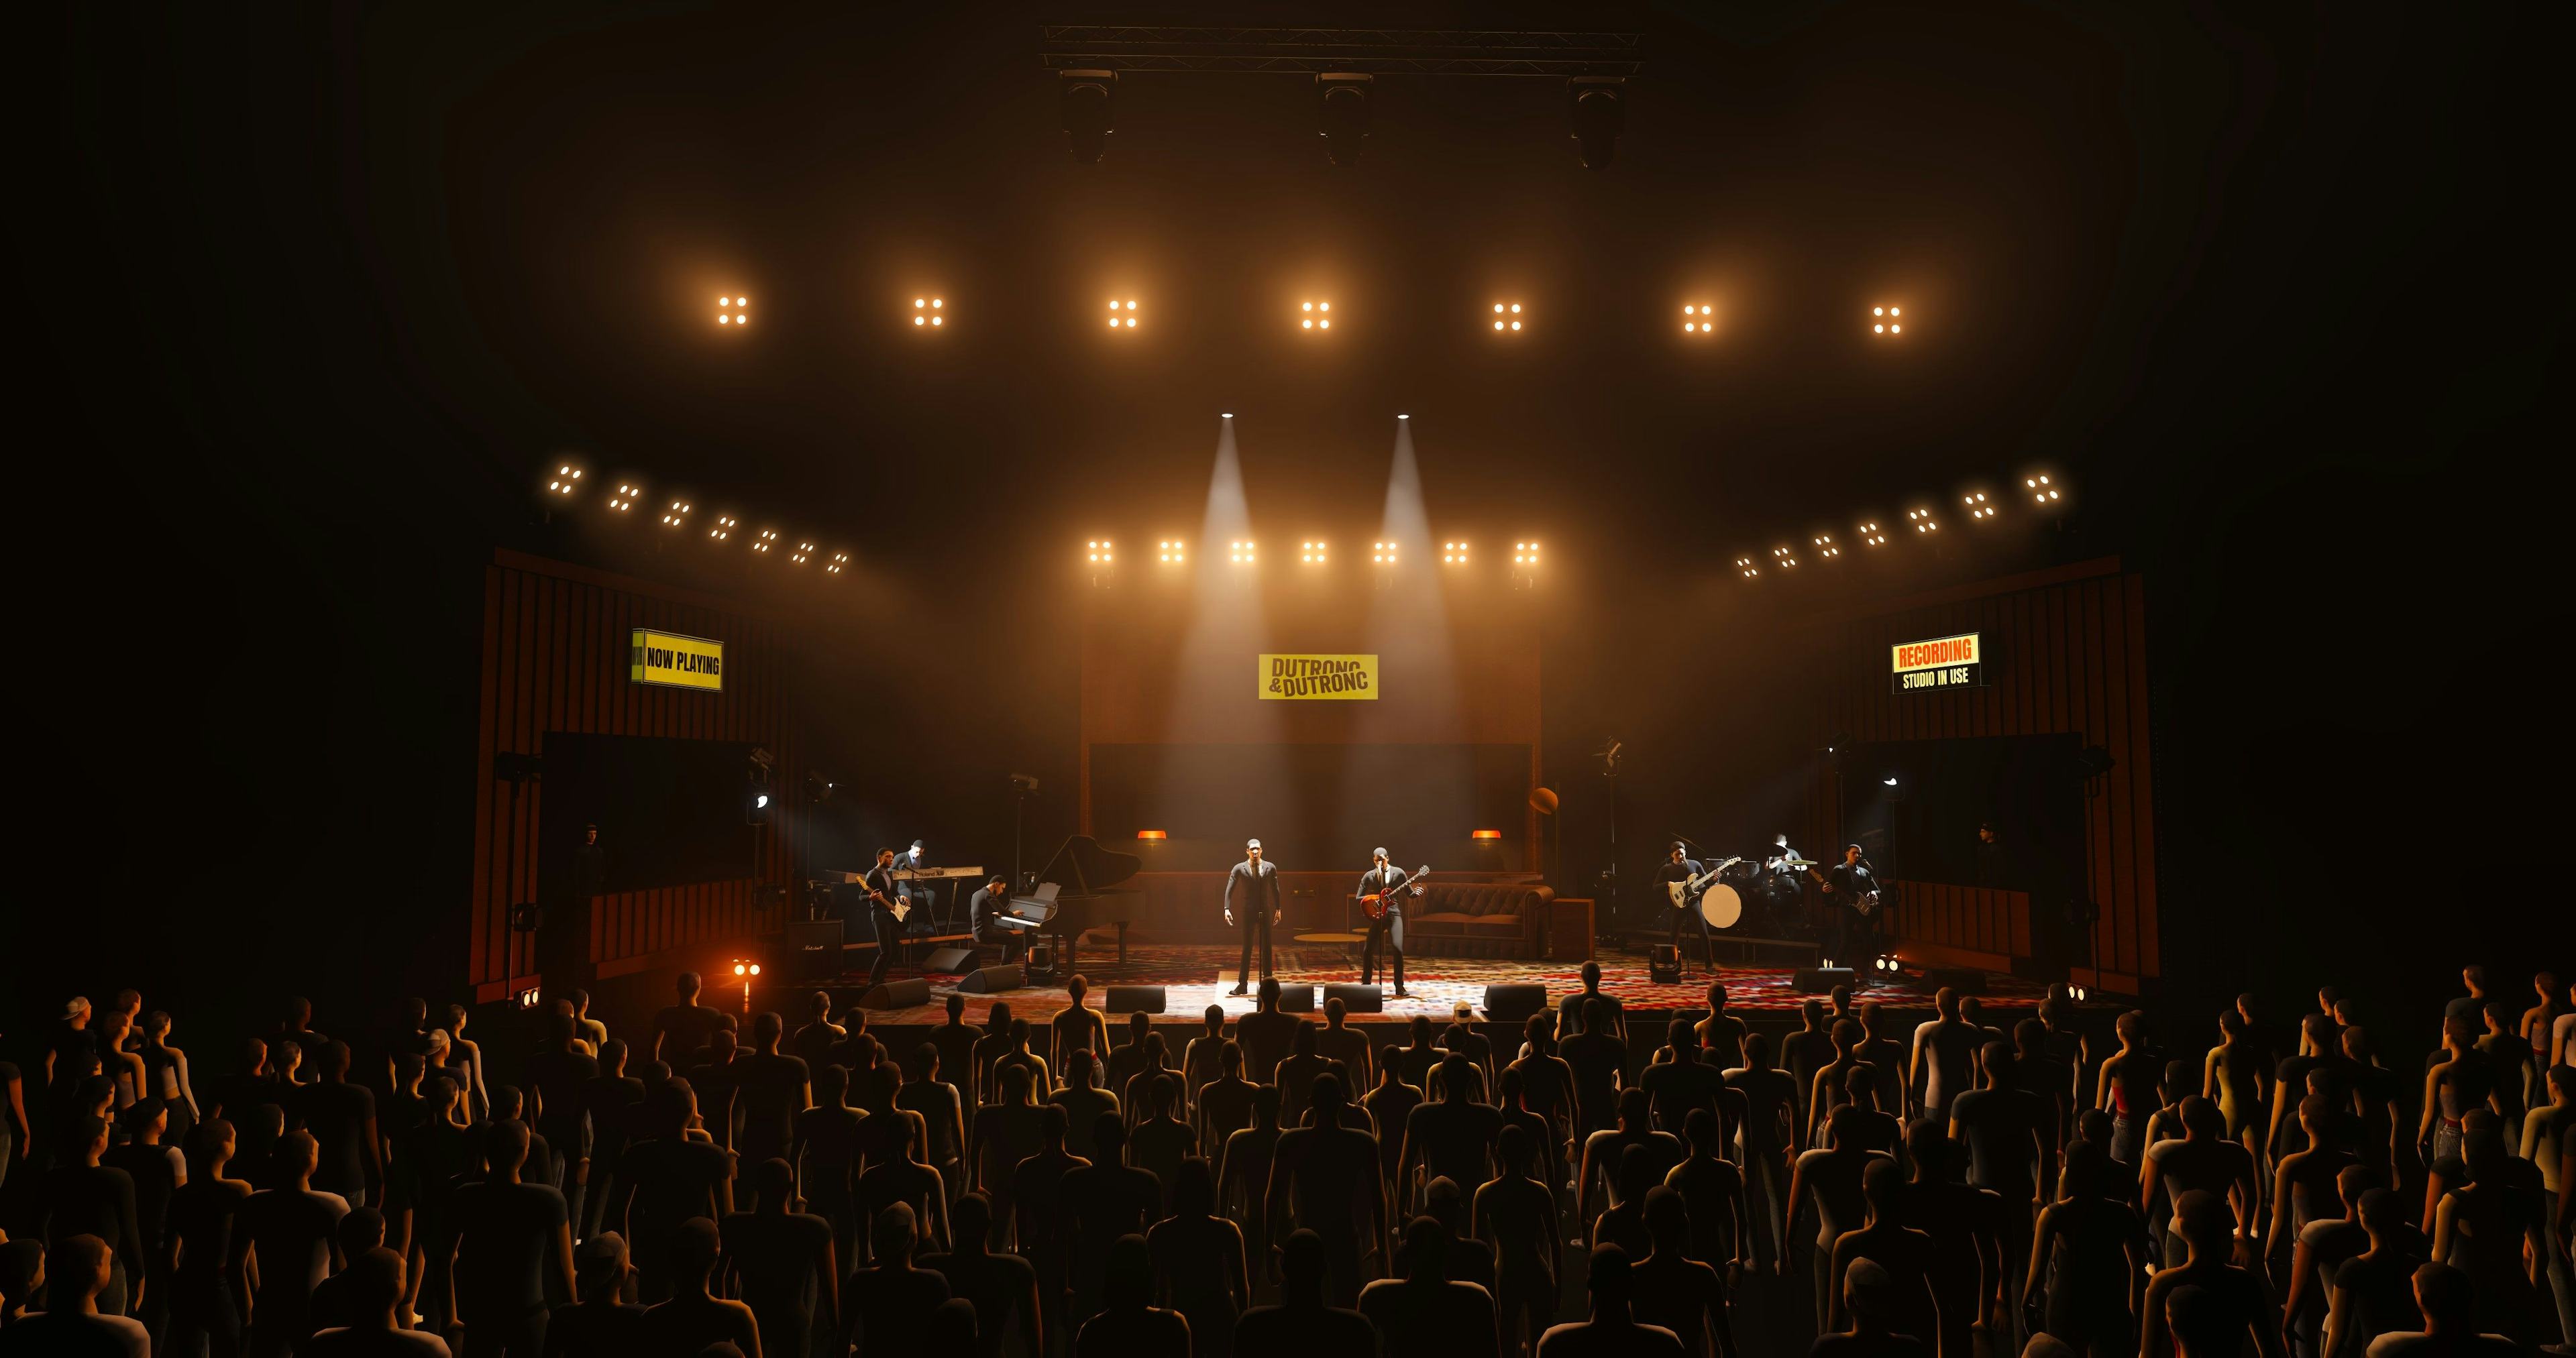 Dutronc & Dutronc Backstage Tour